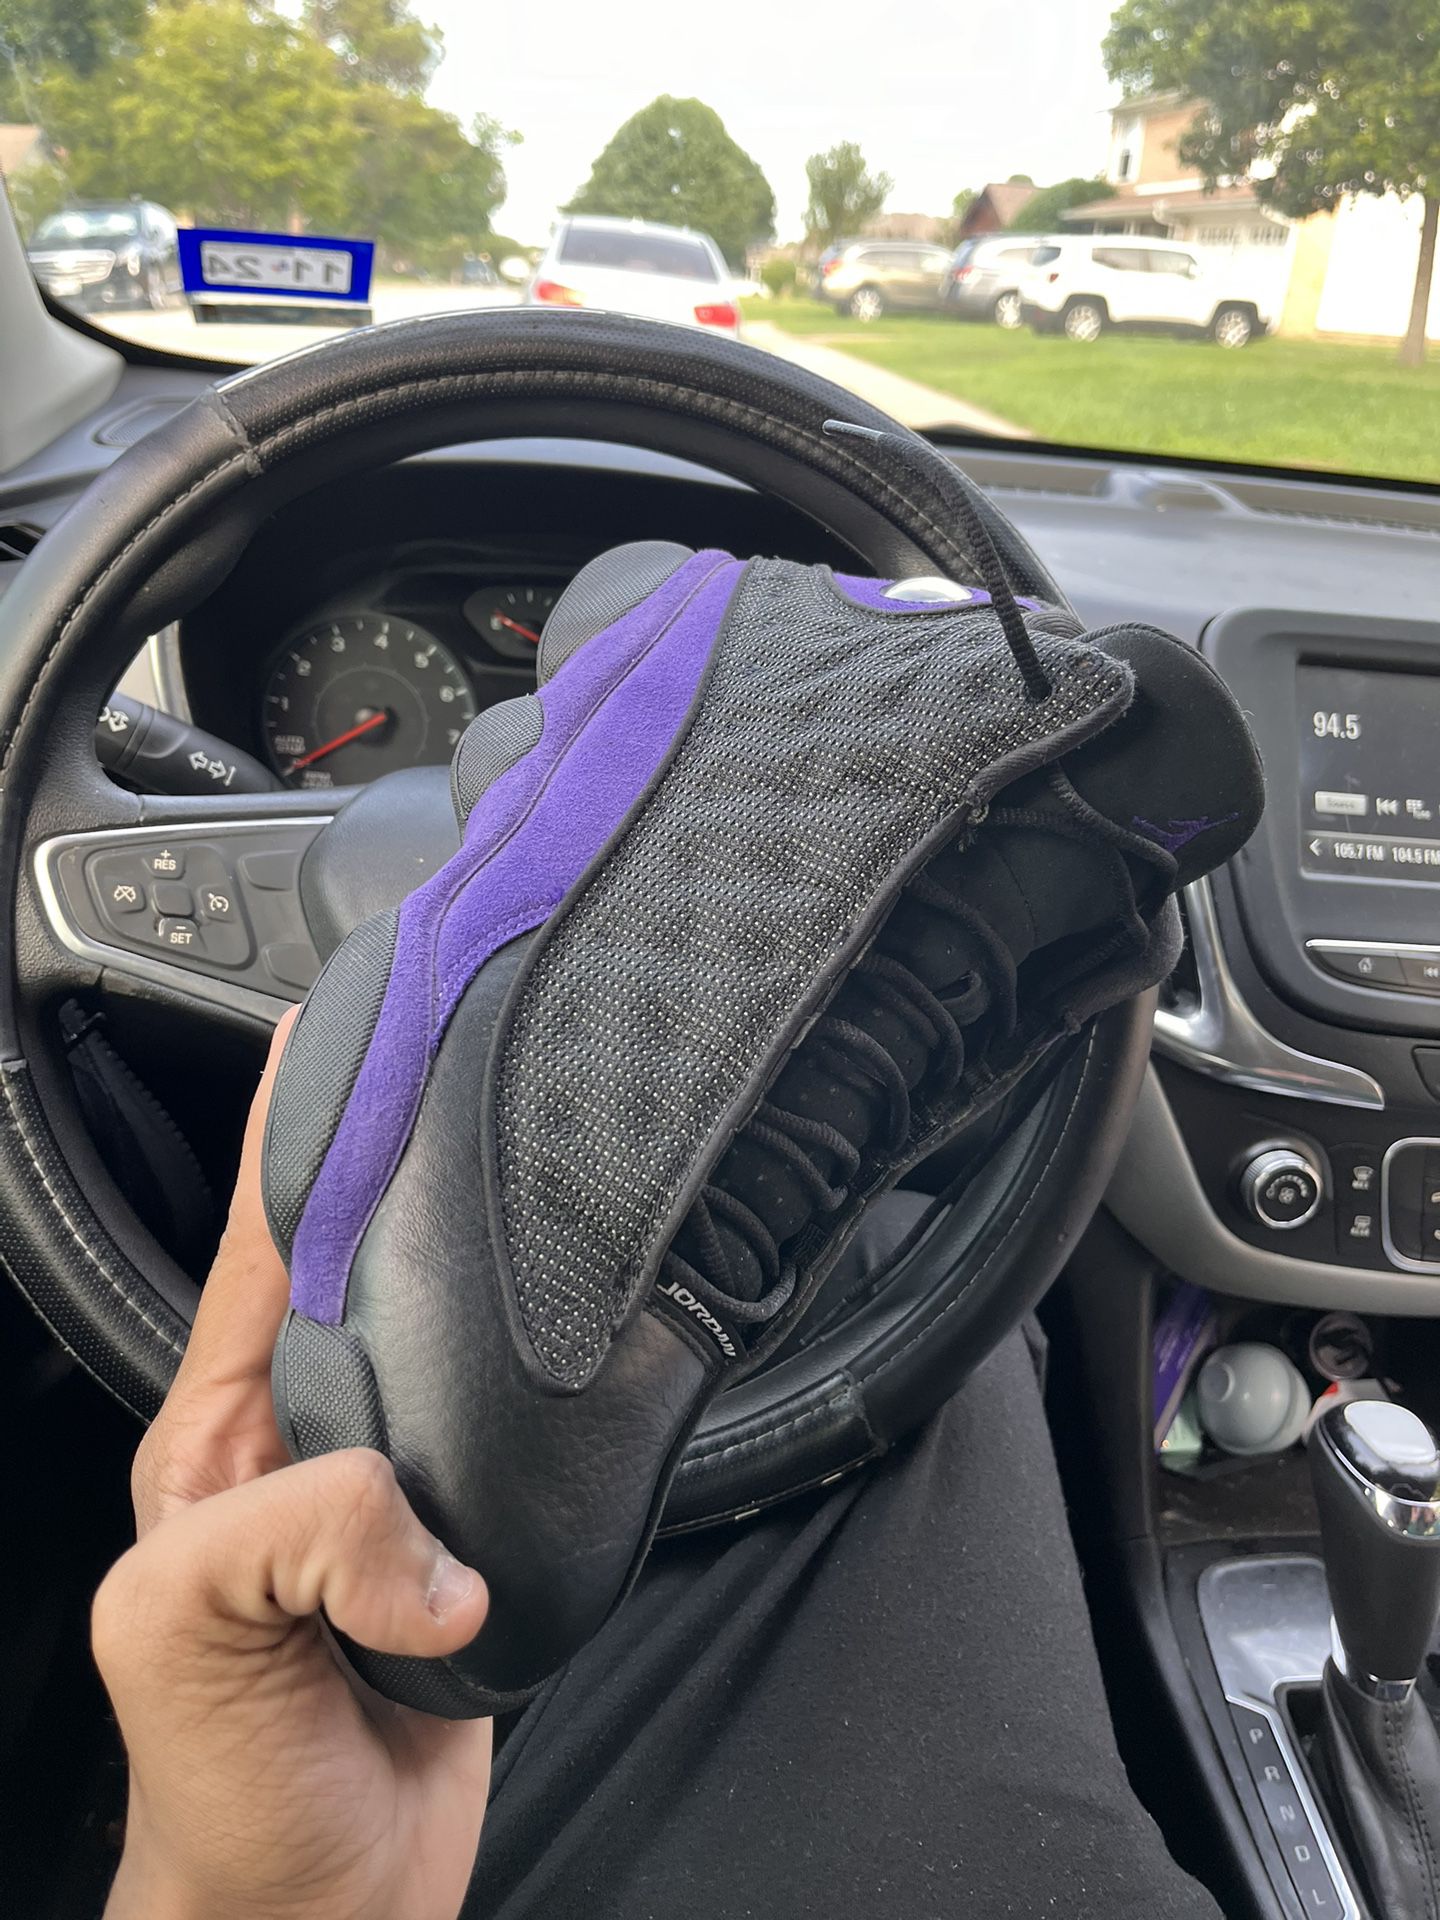 Jordan 13s Purple N Black